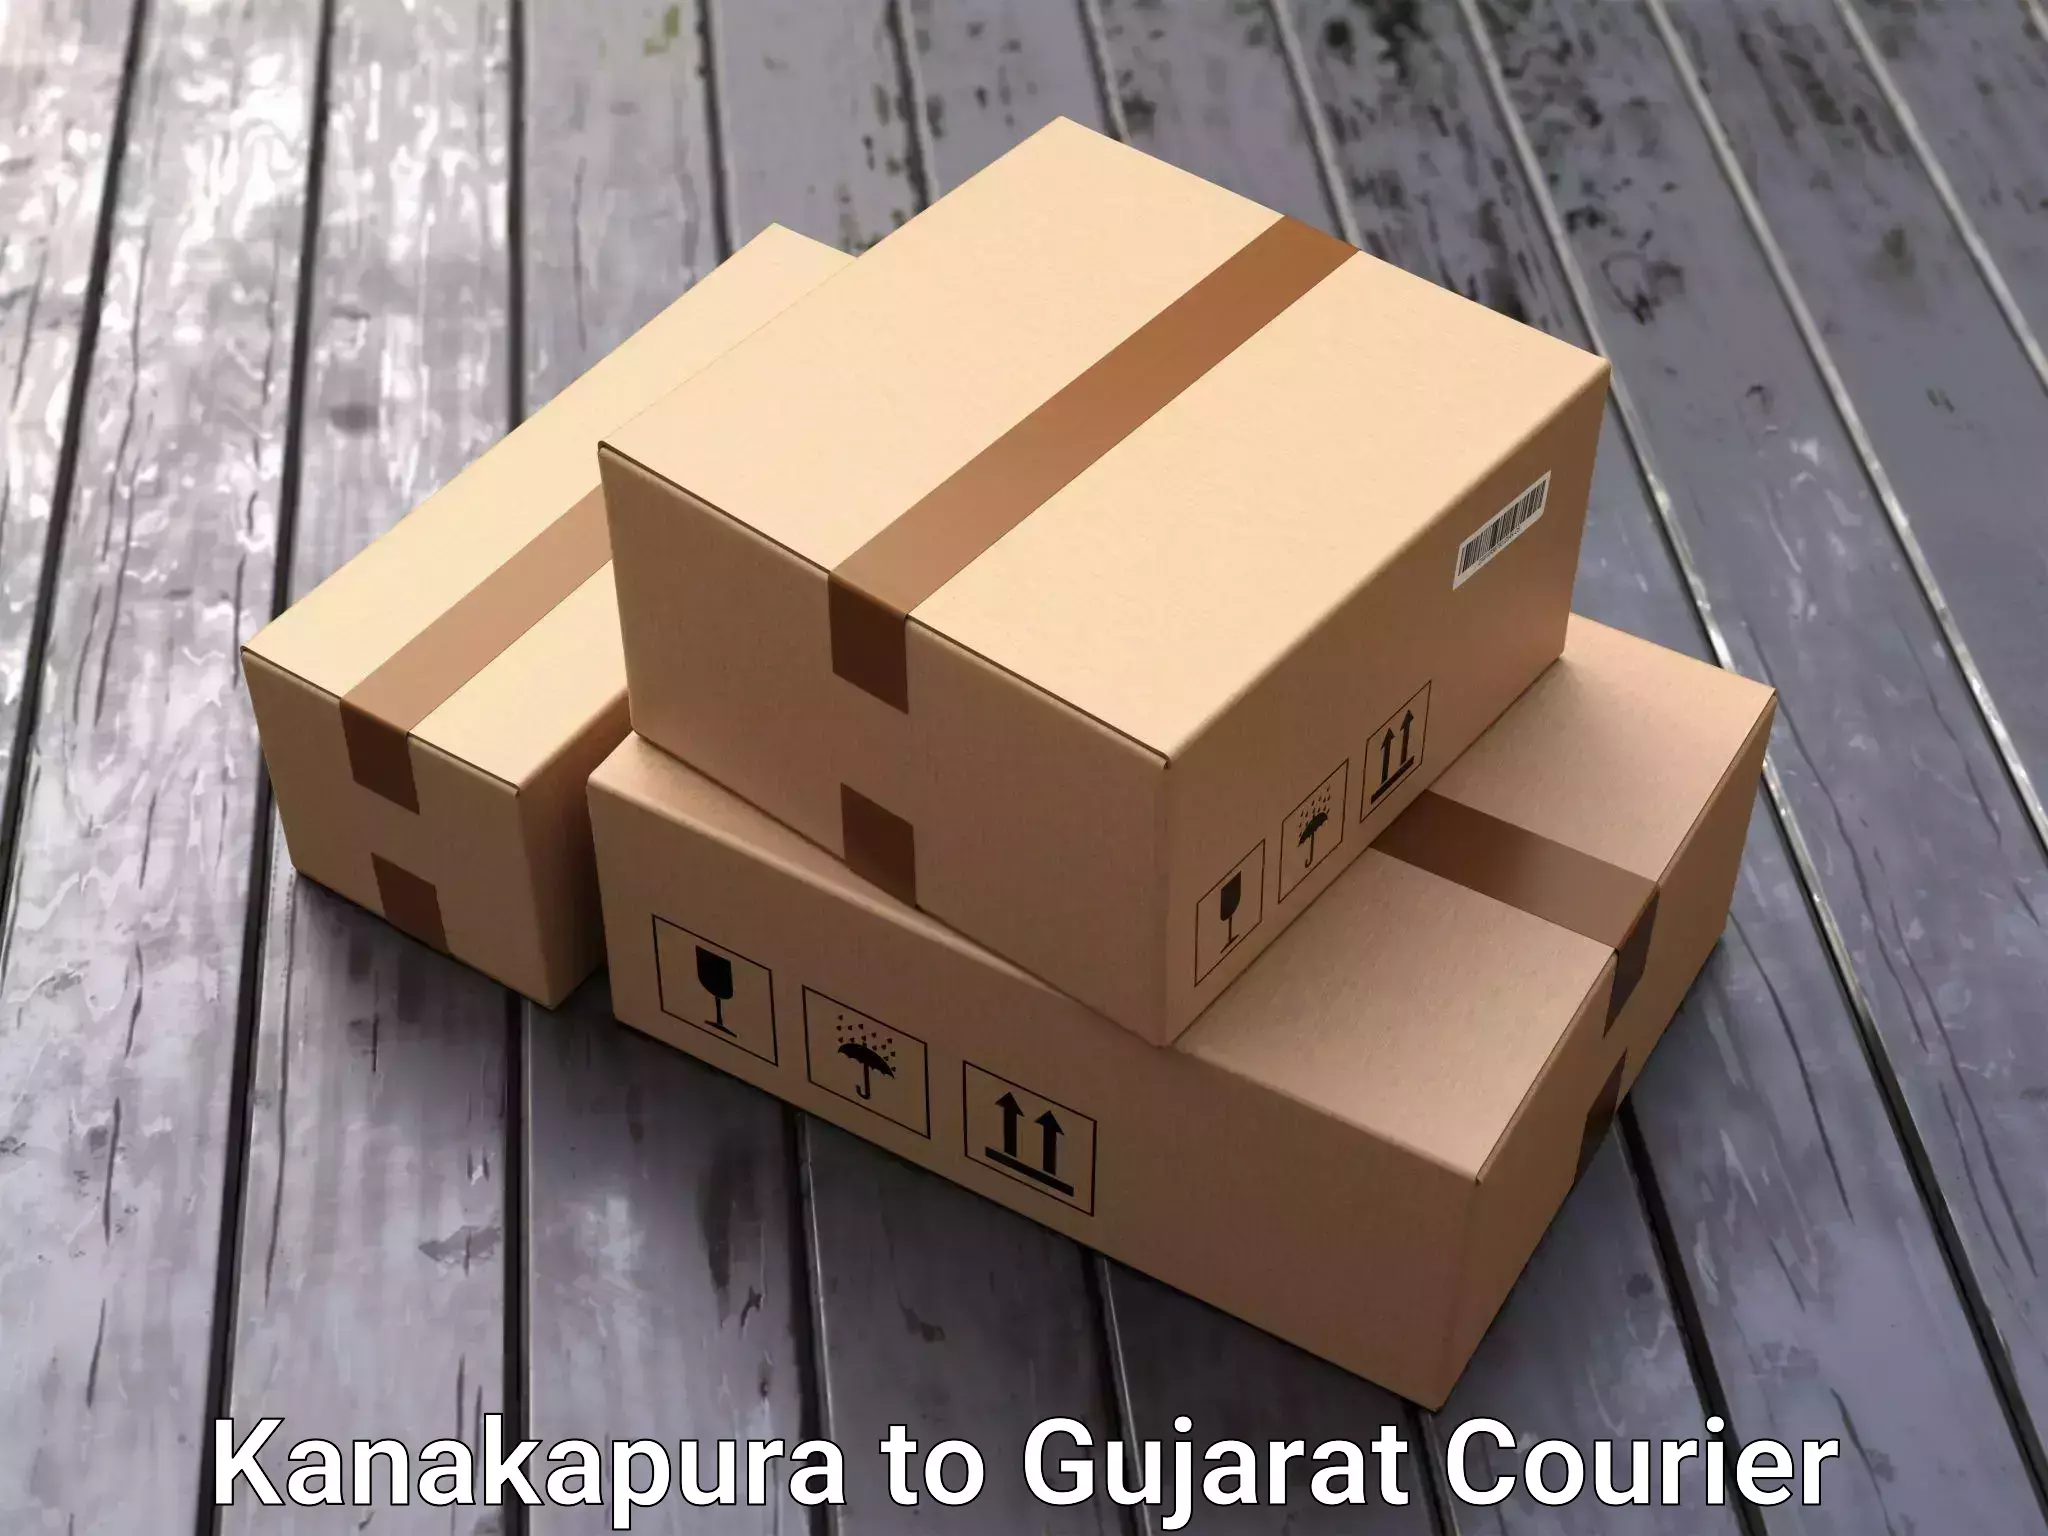 Full home relocation services Kanakapura to Gujarat